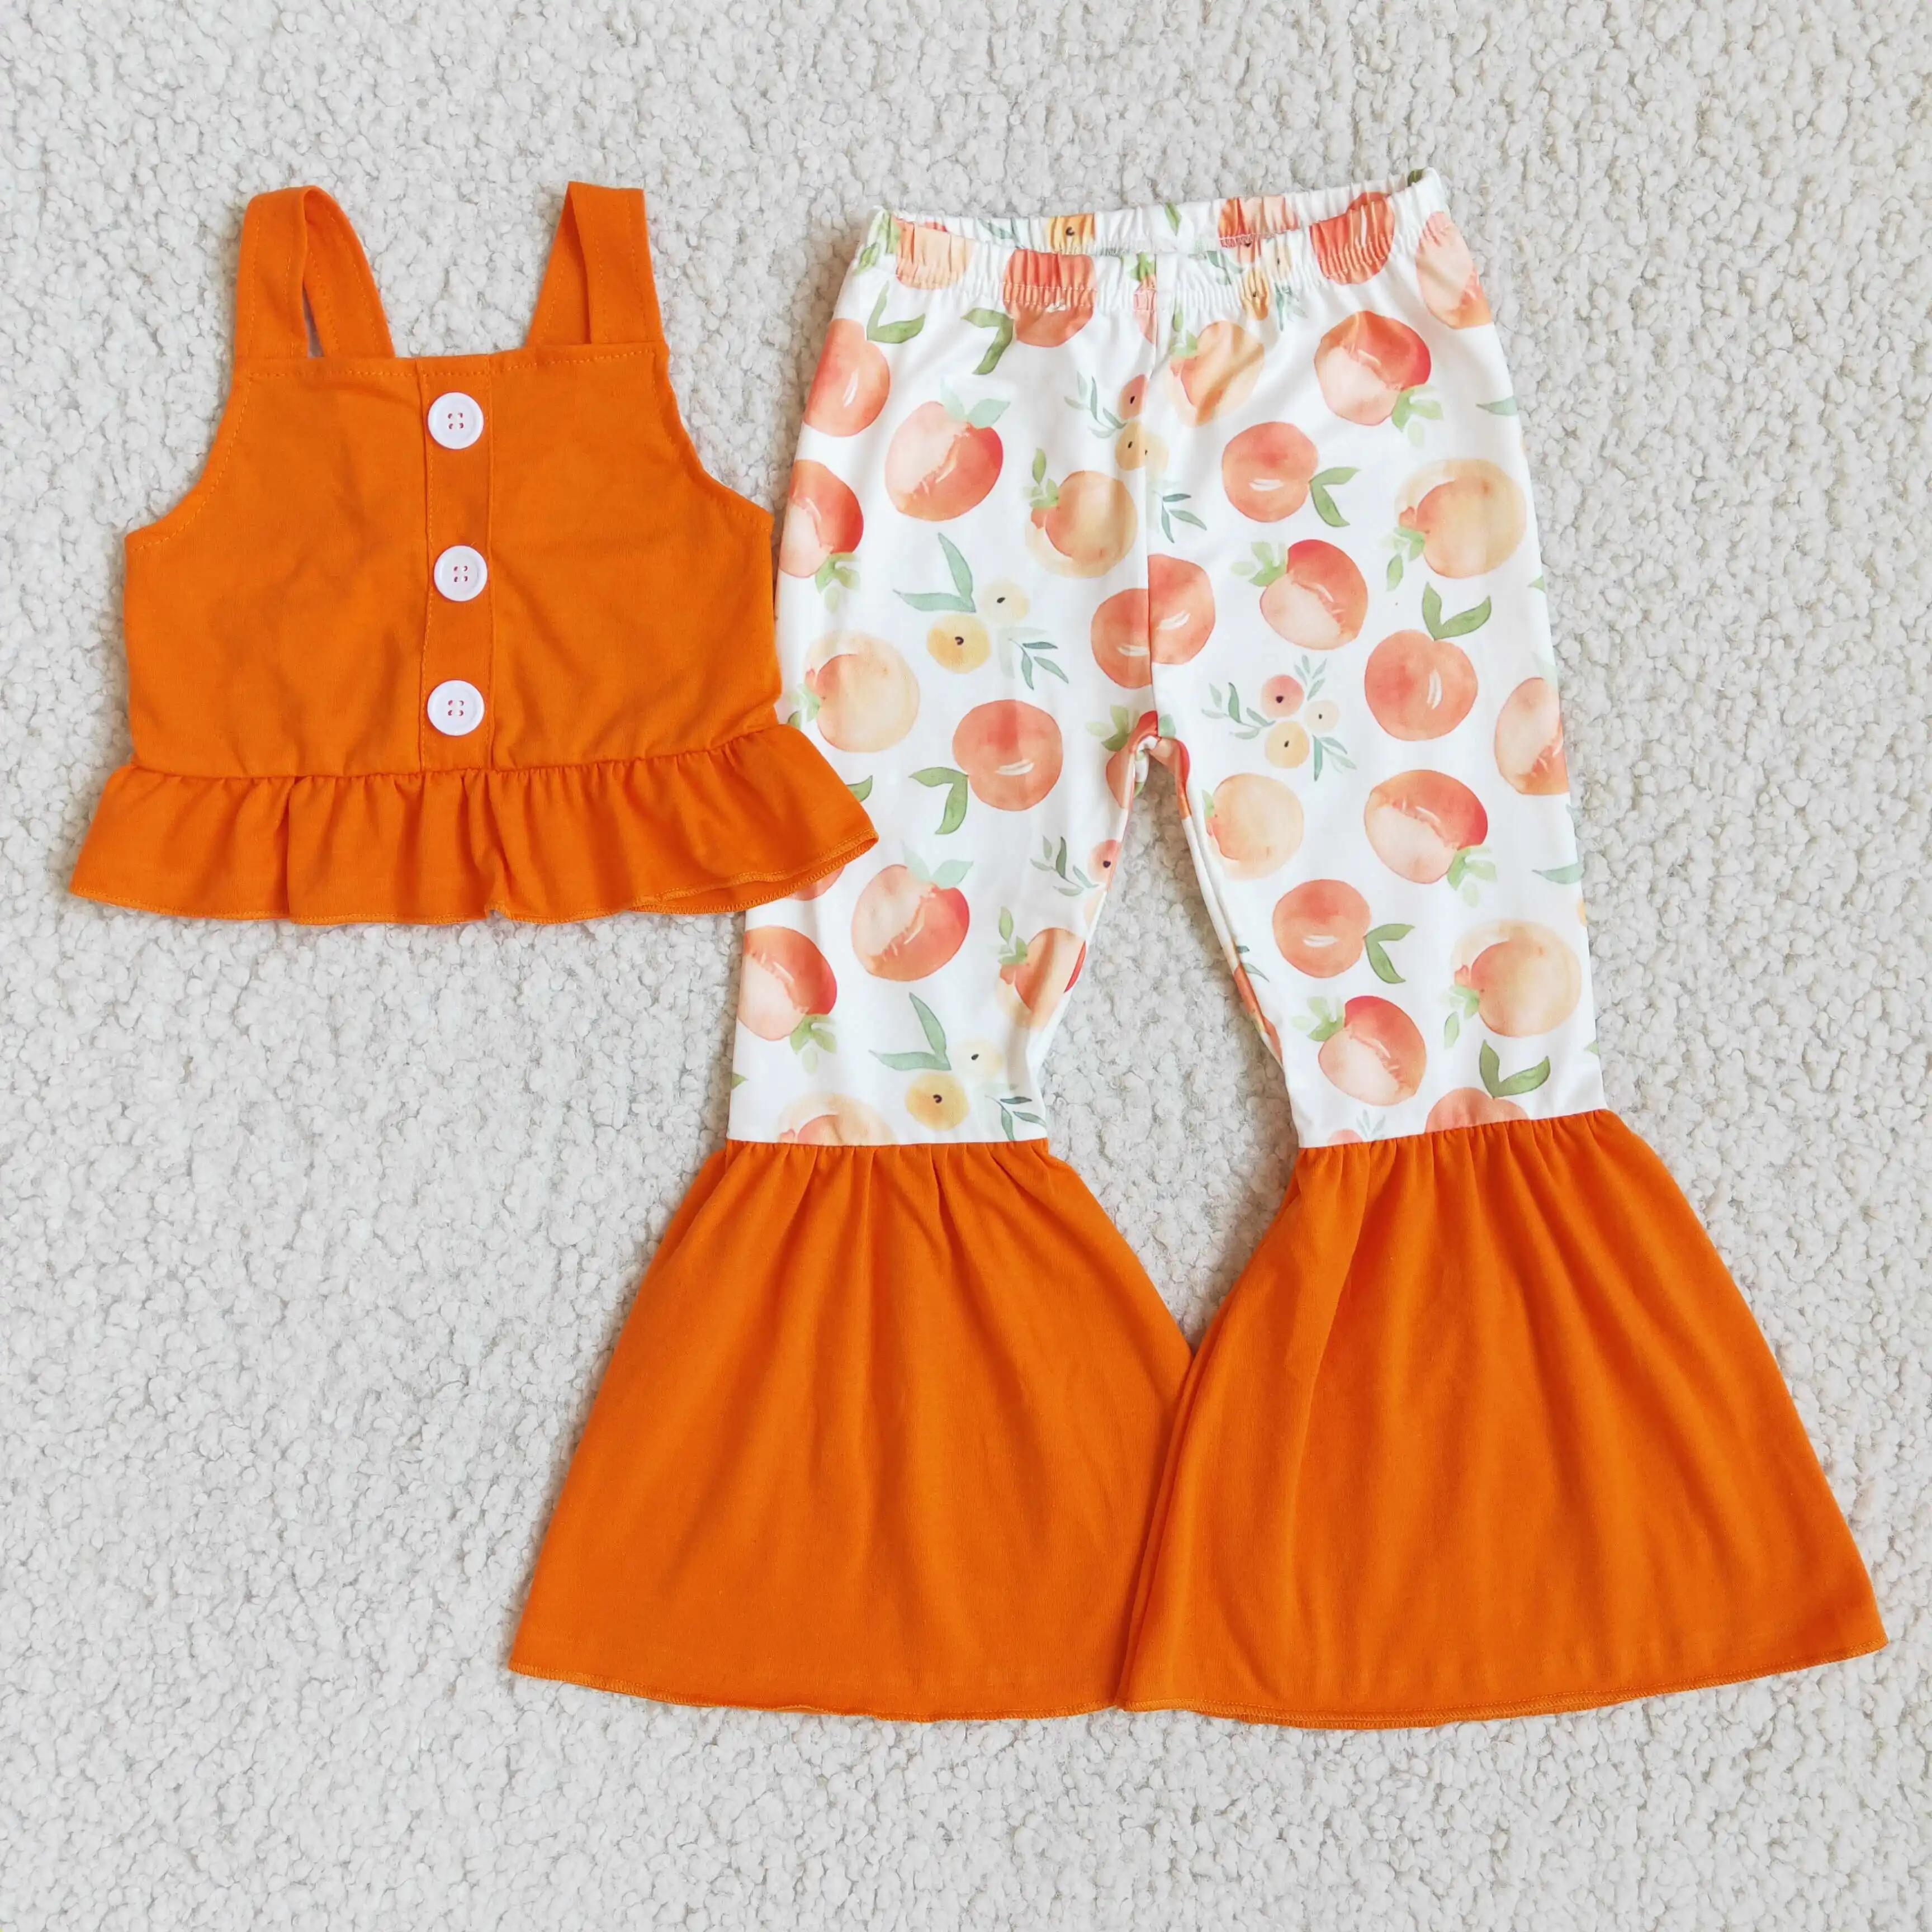 เสื้อกั๊กสีส้มปิดสะดือสายคล้องไหล่,กางเกงก้นระฆังพิมพ์ลายผลไม้ชุดเสื้อผ้าเด็กสำหรับฤดูร้อนเสื้อผ้าเด็กผู้หญิง